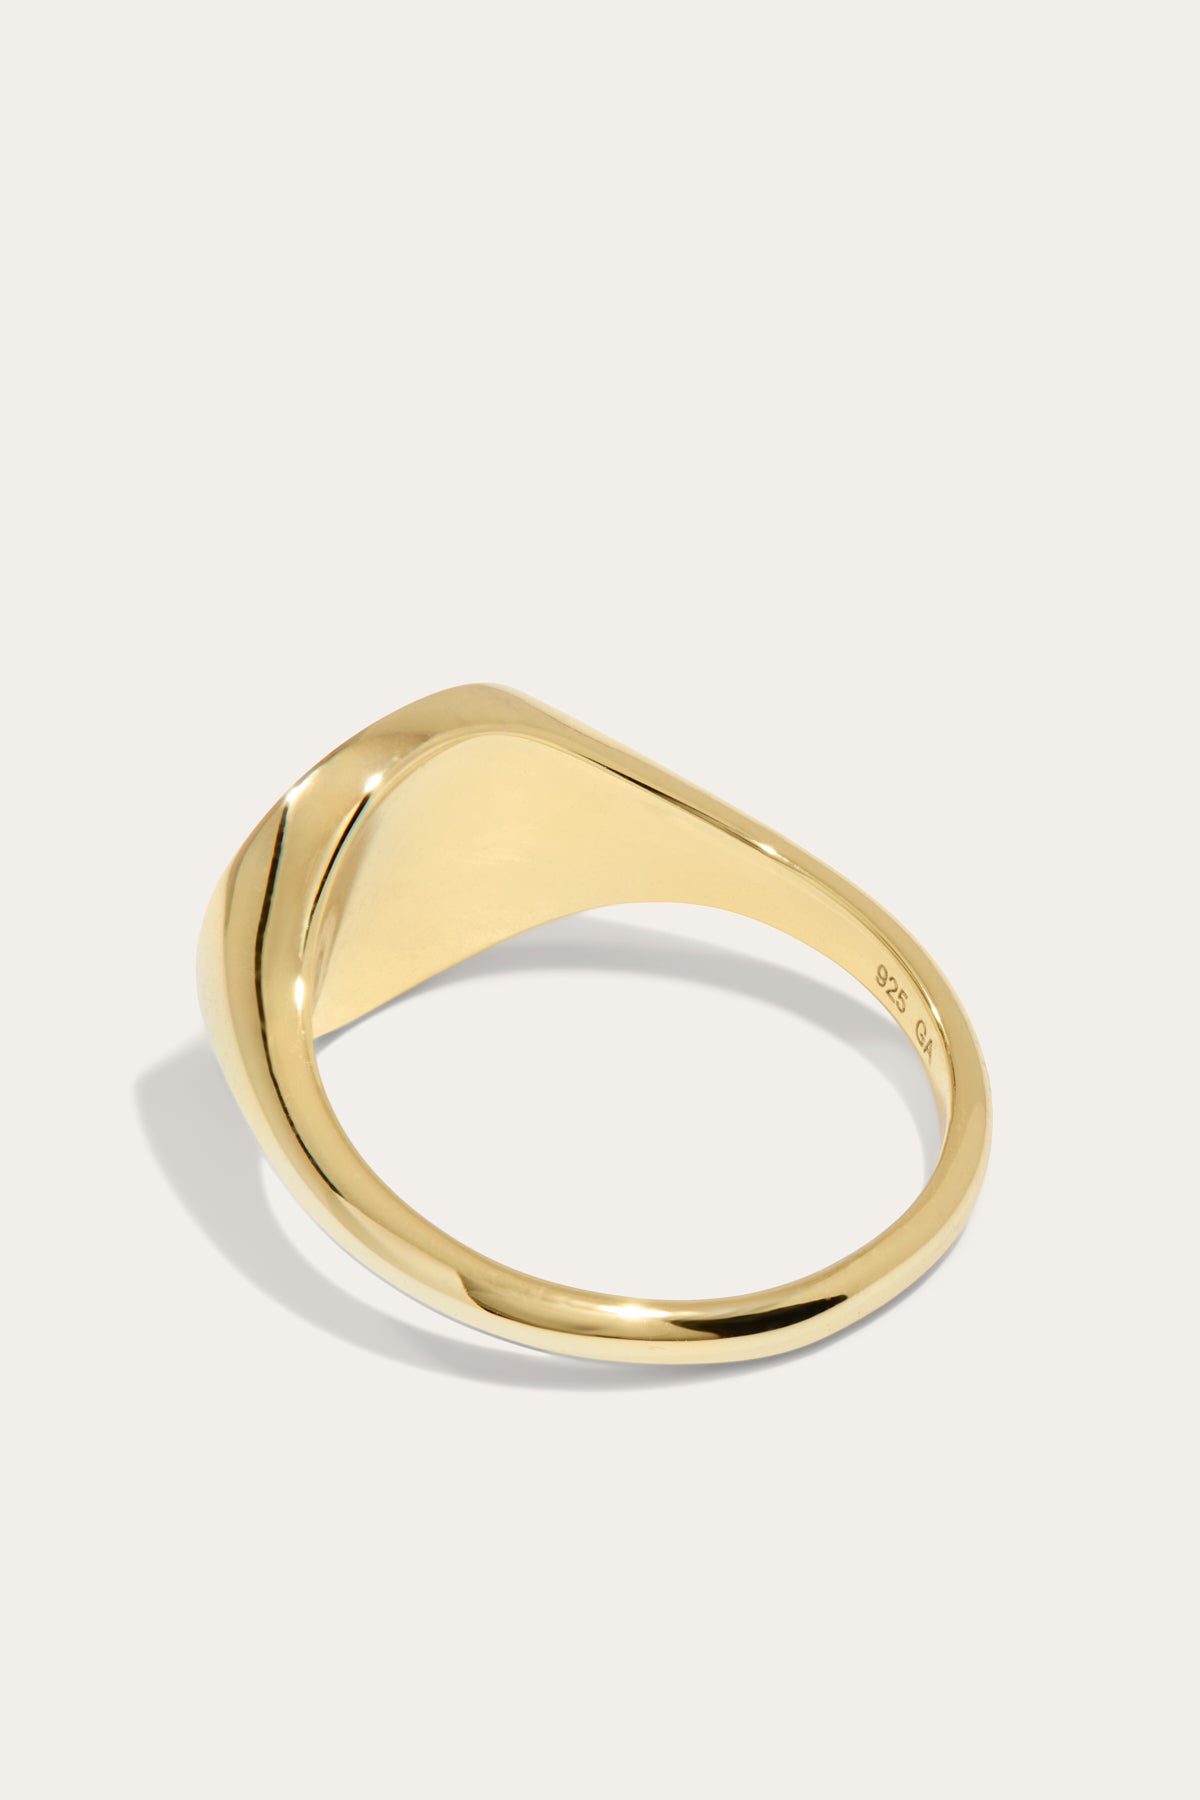 Boheme Heart Gold Signet Ring | Galleria Armadoro